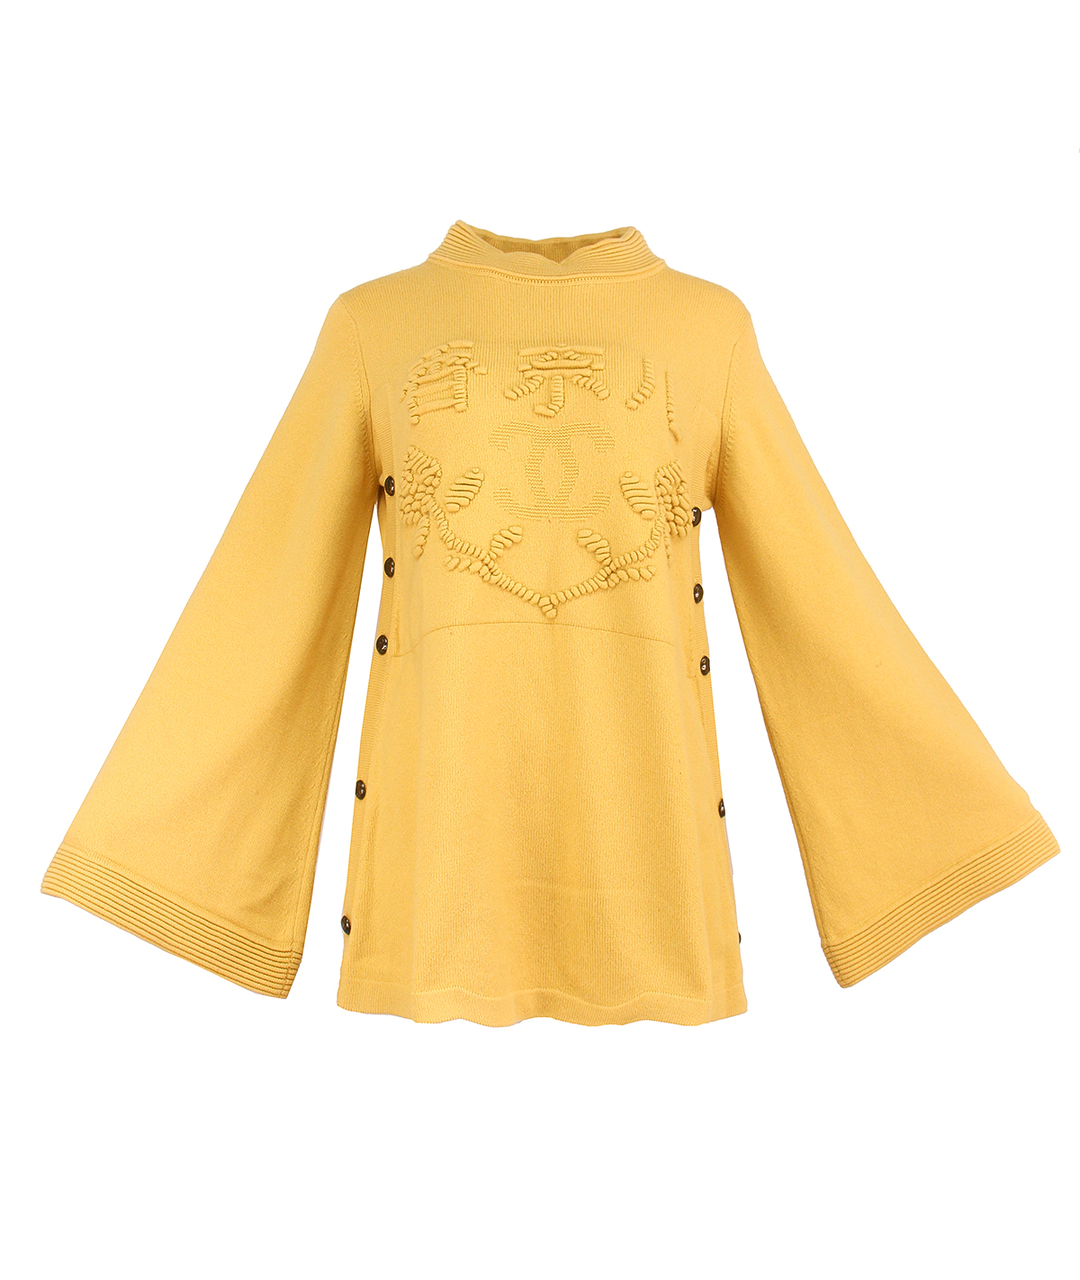 CHANEL PRE-OWNED Желтый кашемировый джемпер / свитер, фото 1